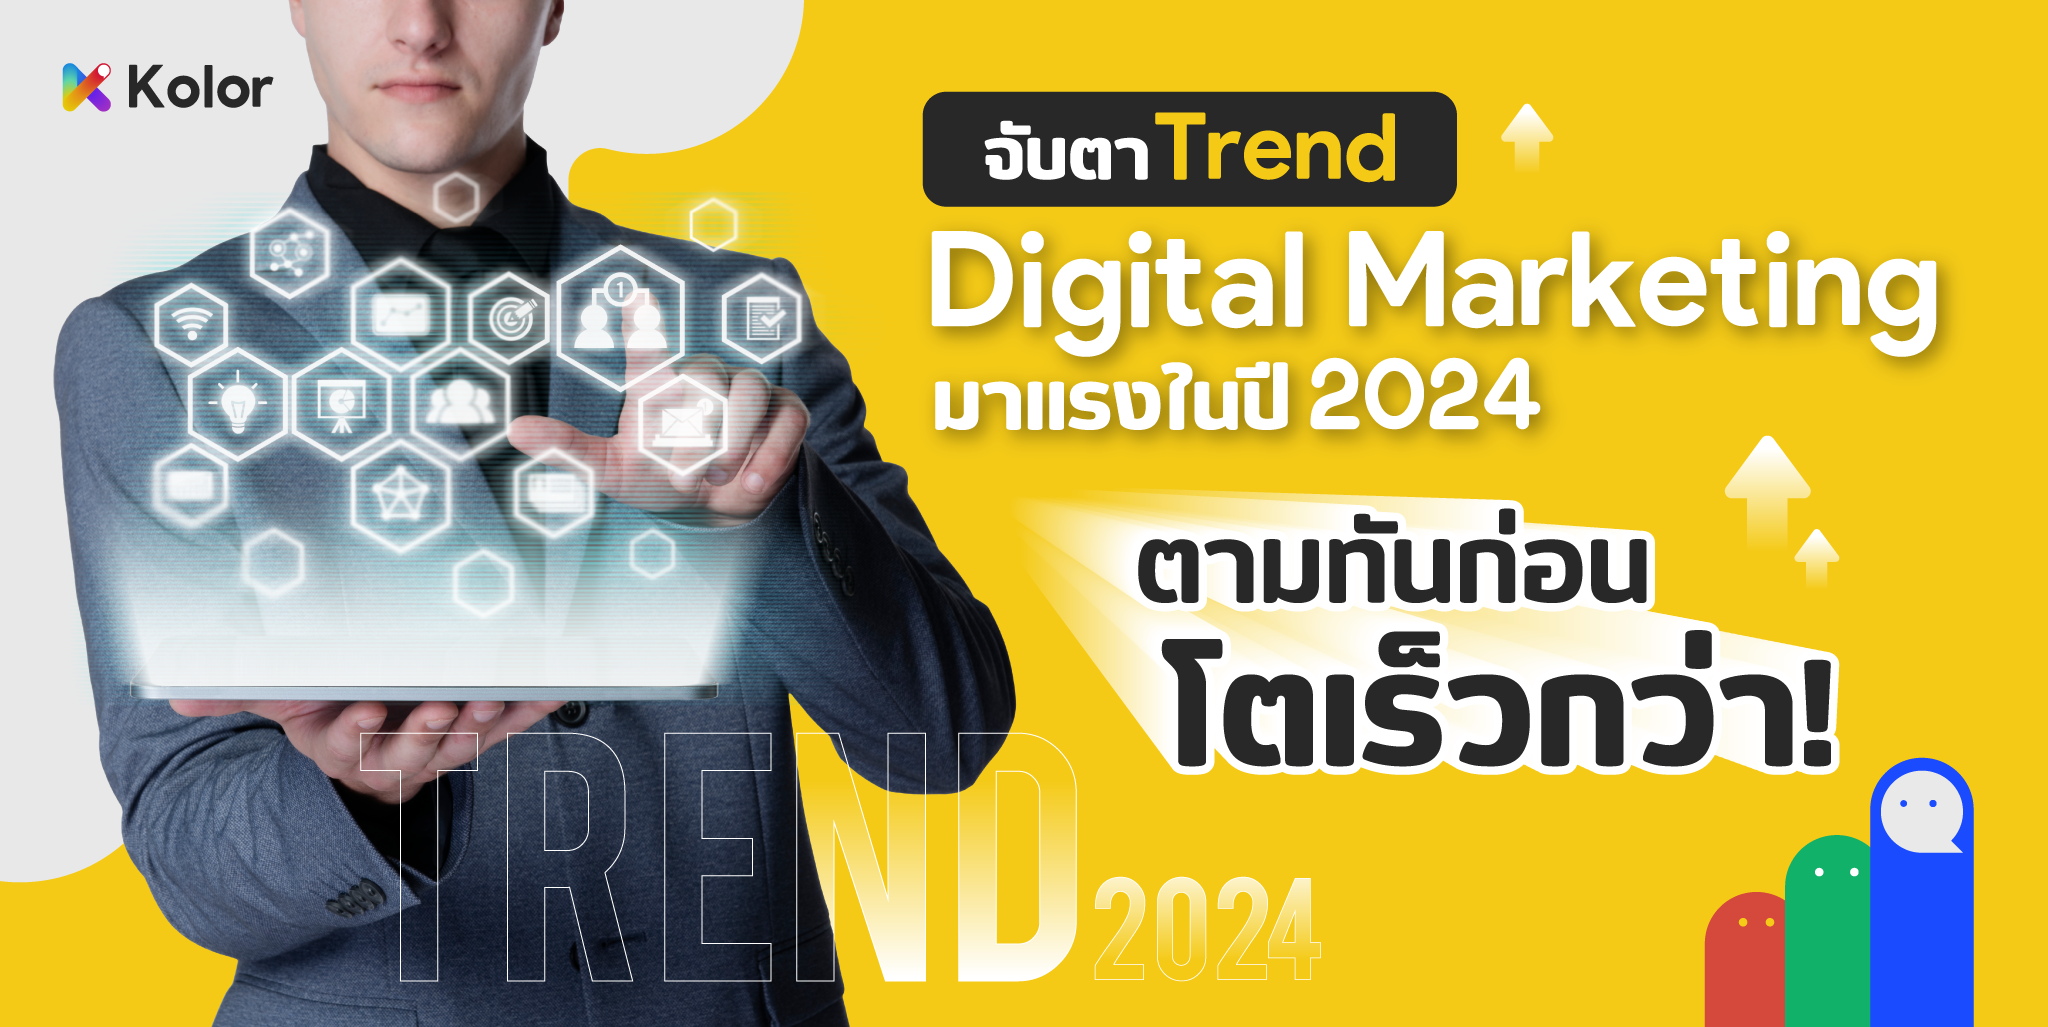 เทรนด์ Digital marketing มาแรงในปี 2024